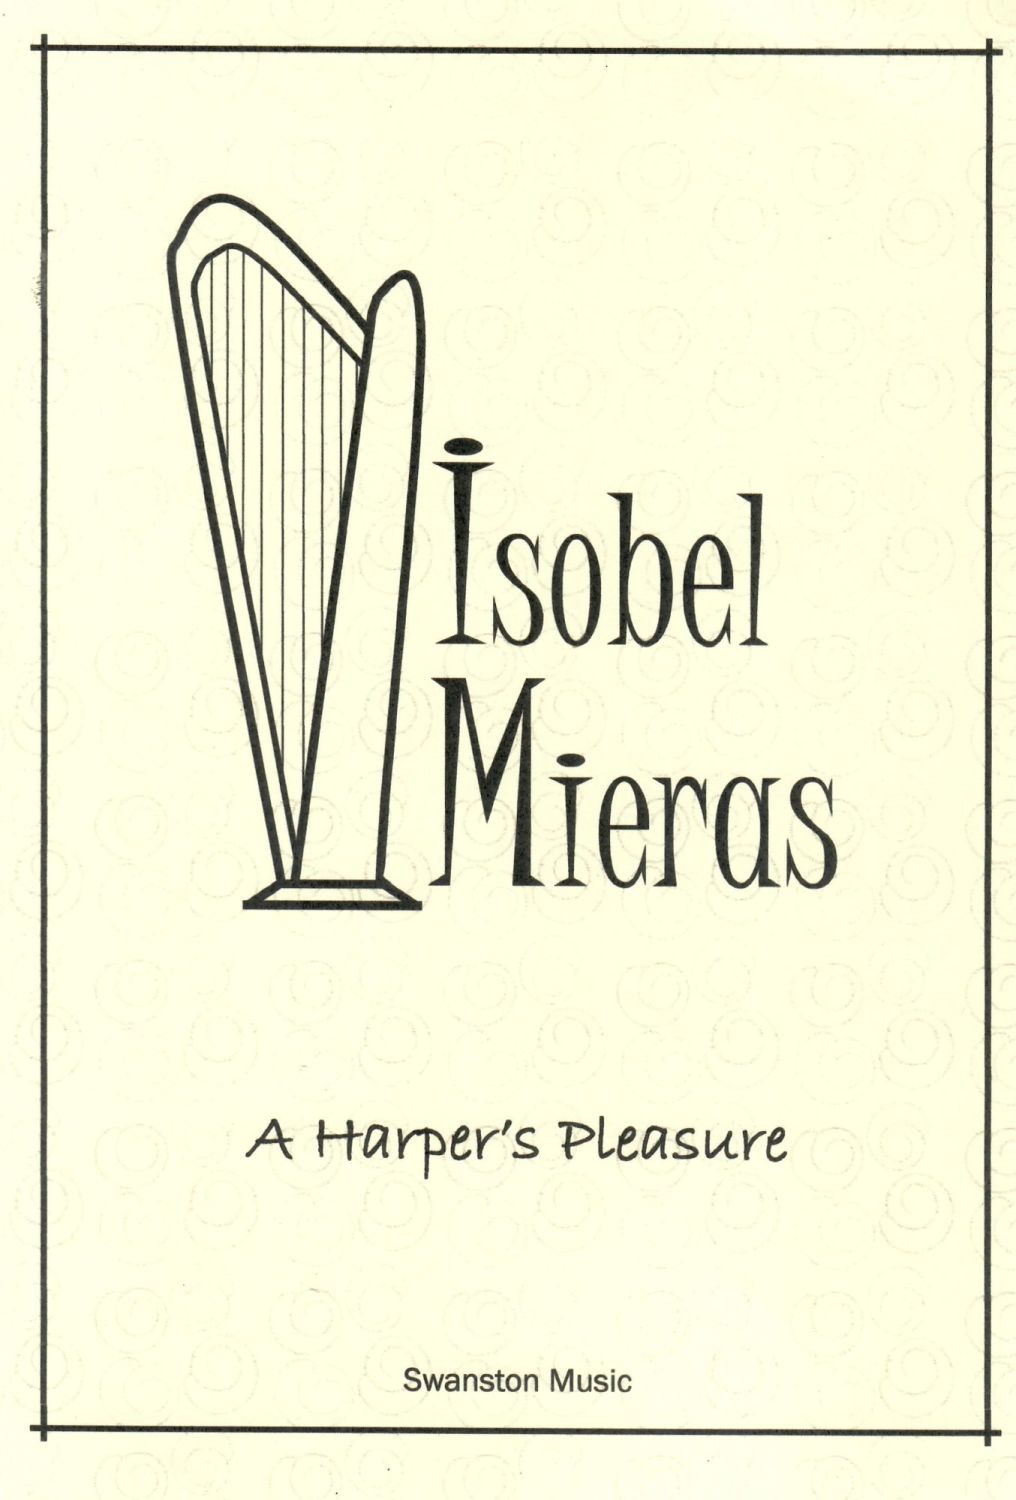 A Harper's Pleasure - Isobel Mieras